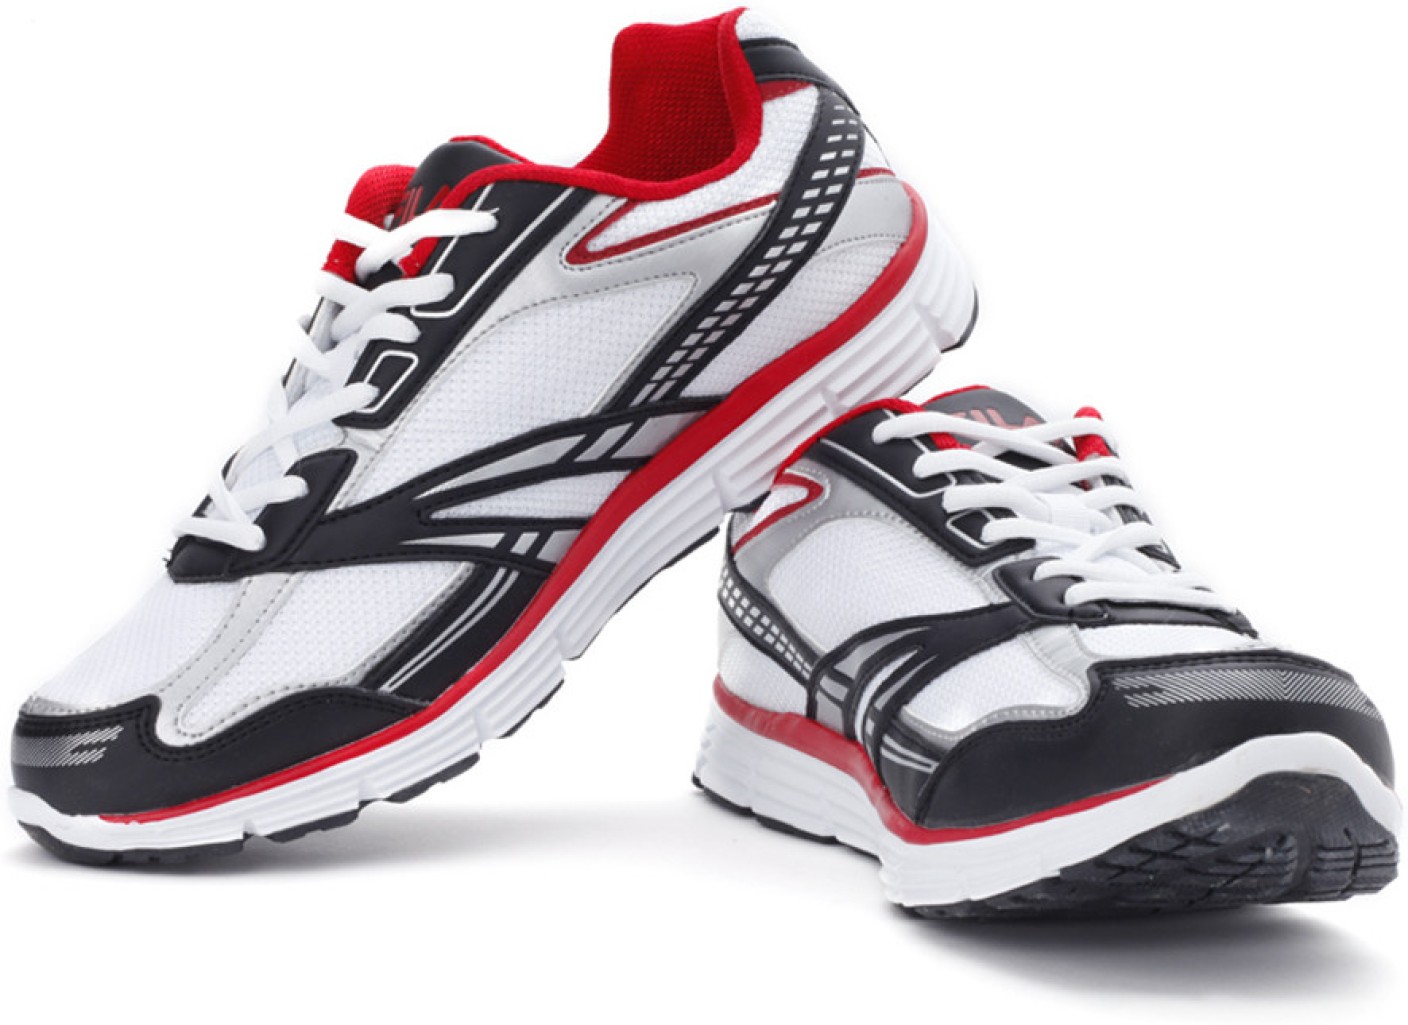 Fila Glider Running Shoes For Men - Buy White, Black, Red Color Fila ...